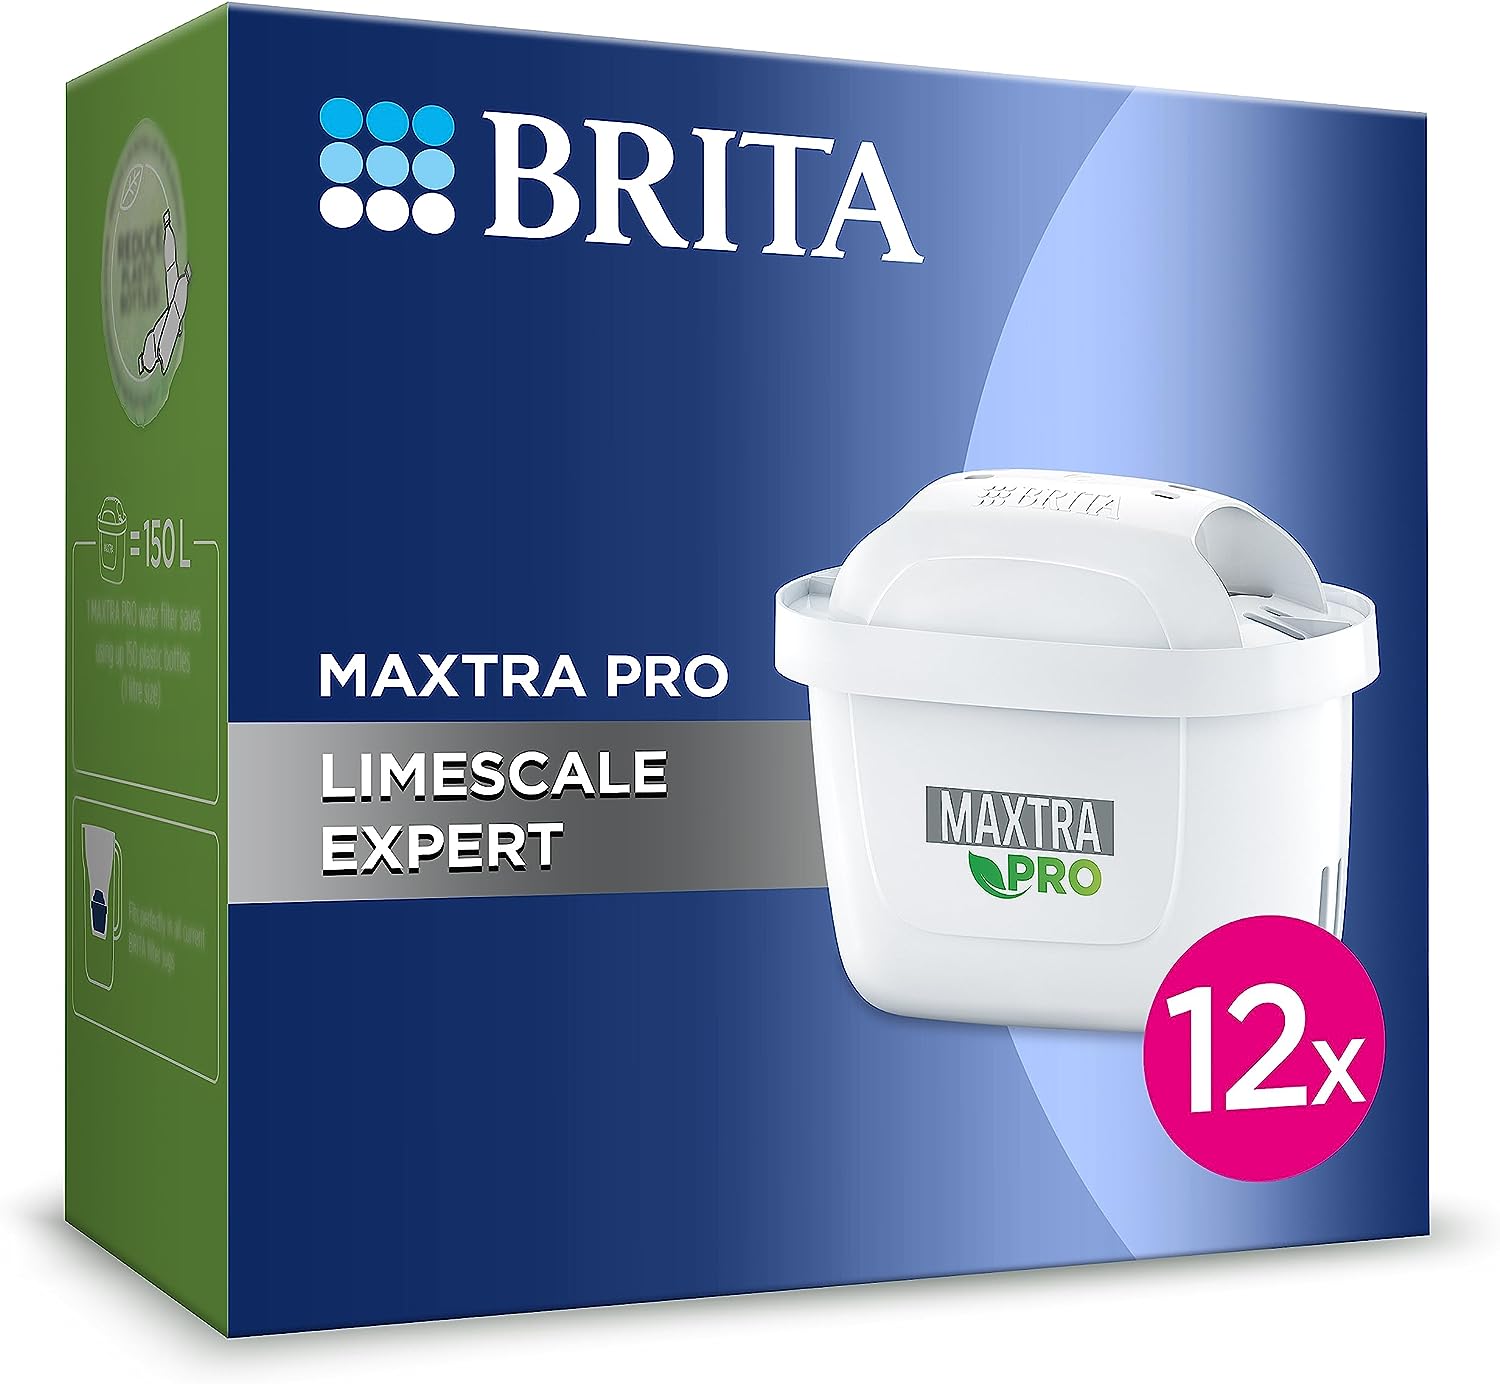 BRITA Marella Red MAXTRA PRO S1051120 - Bluestone Sales & Distribution